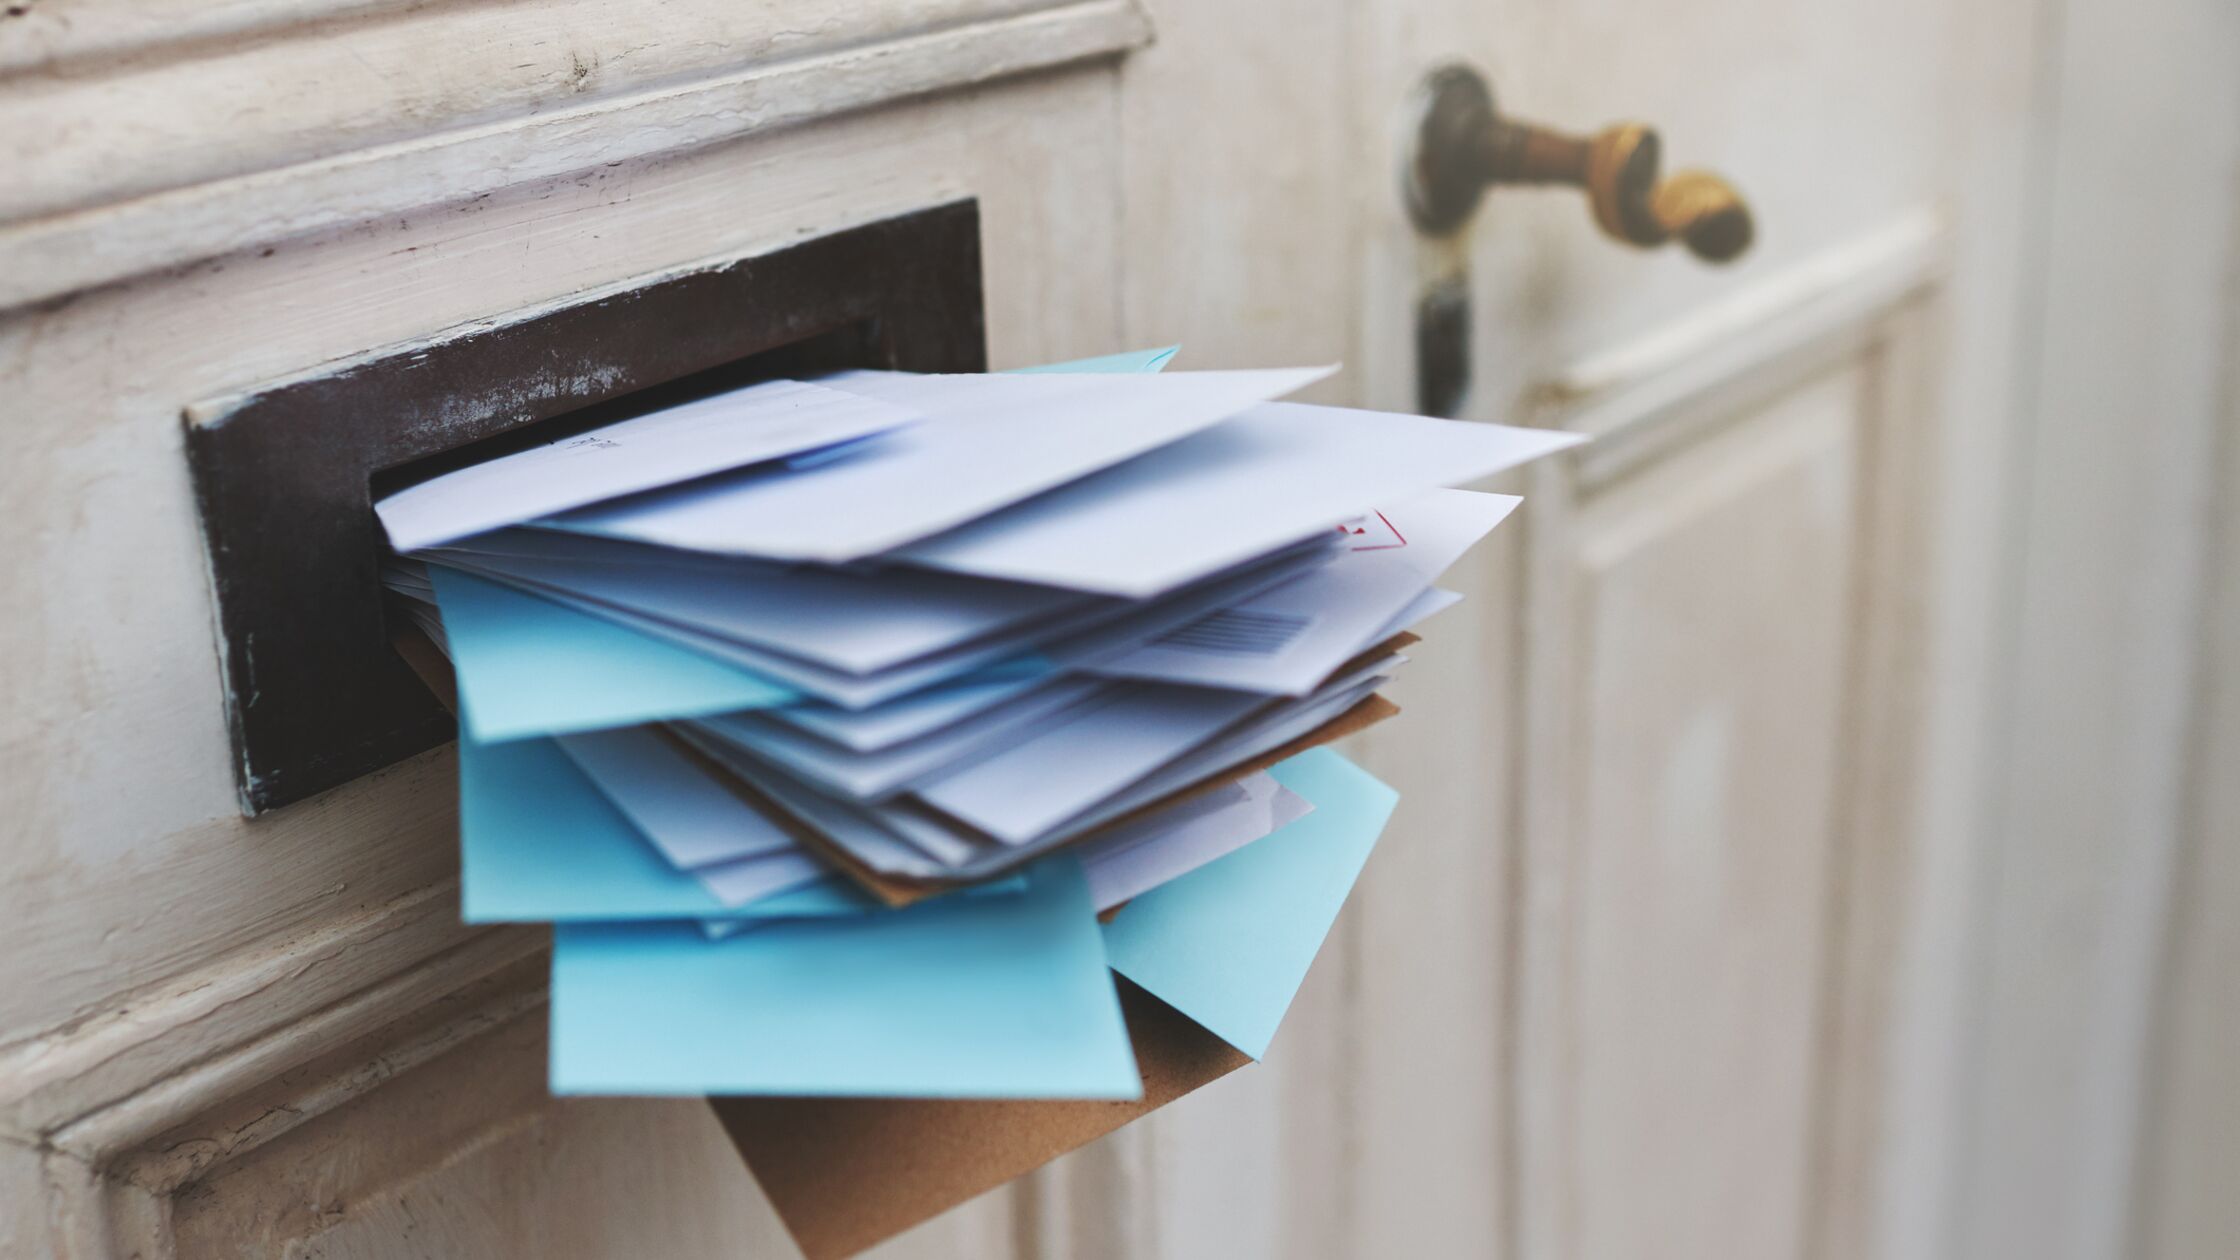 Briefschlitz in einer Wohnungstür, vollgestopft mit Briefen